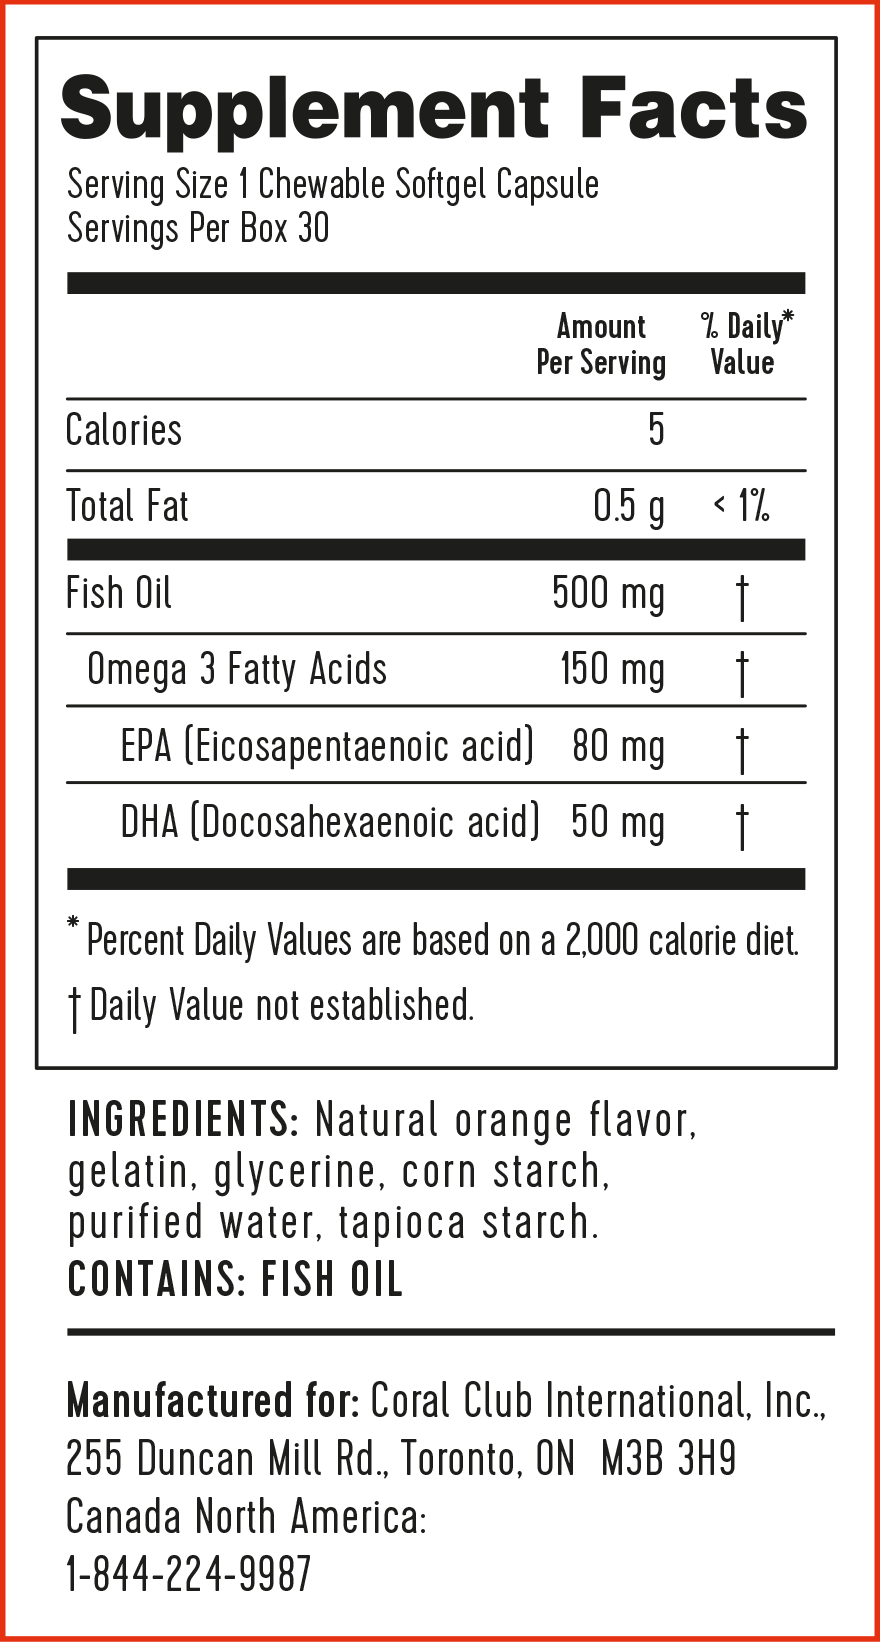 Omega 3 Oranges (30 chewable capsules)